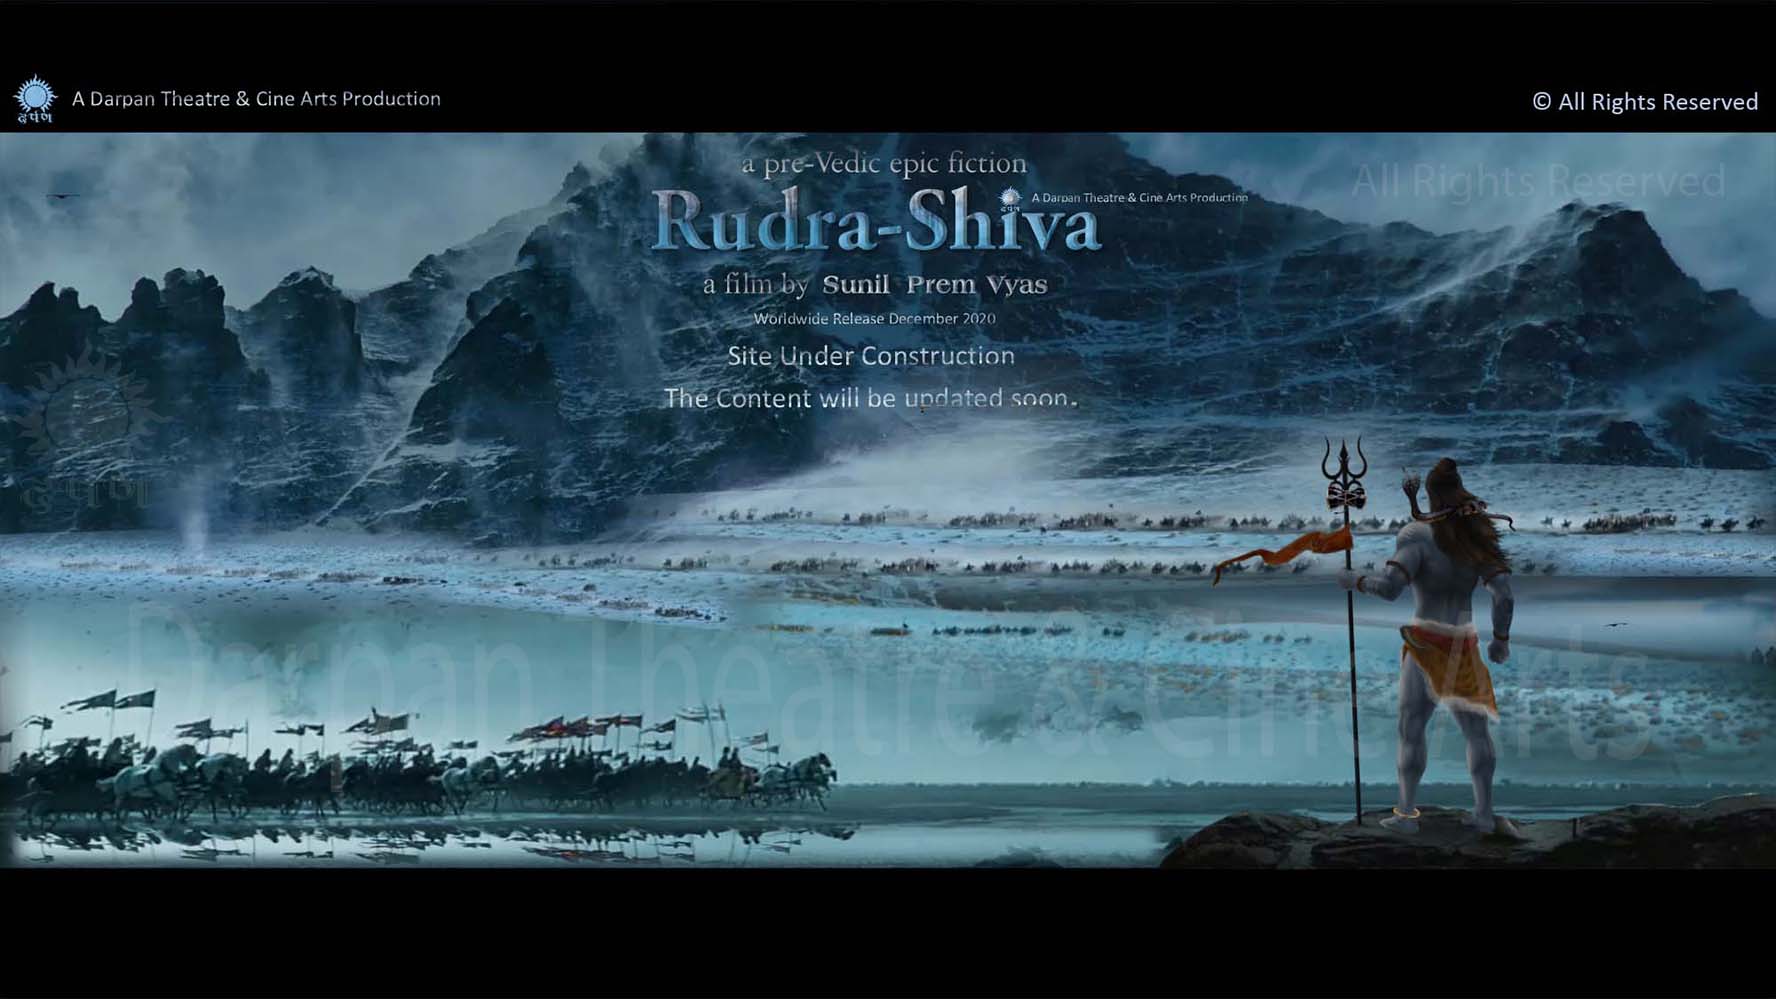 193-Rudra-Shiva-DTCA-Sunil Prem Vyas-wm